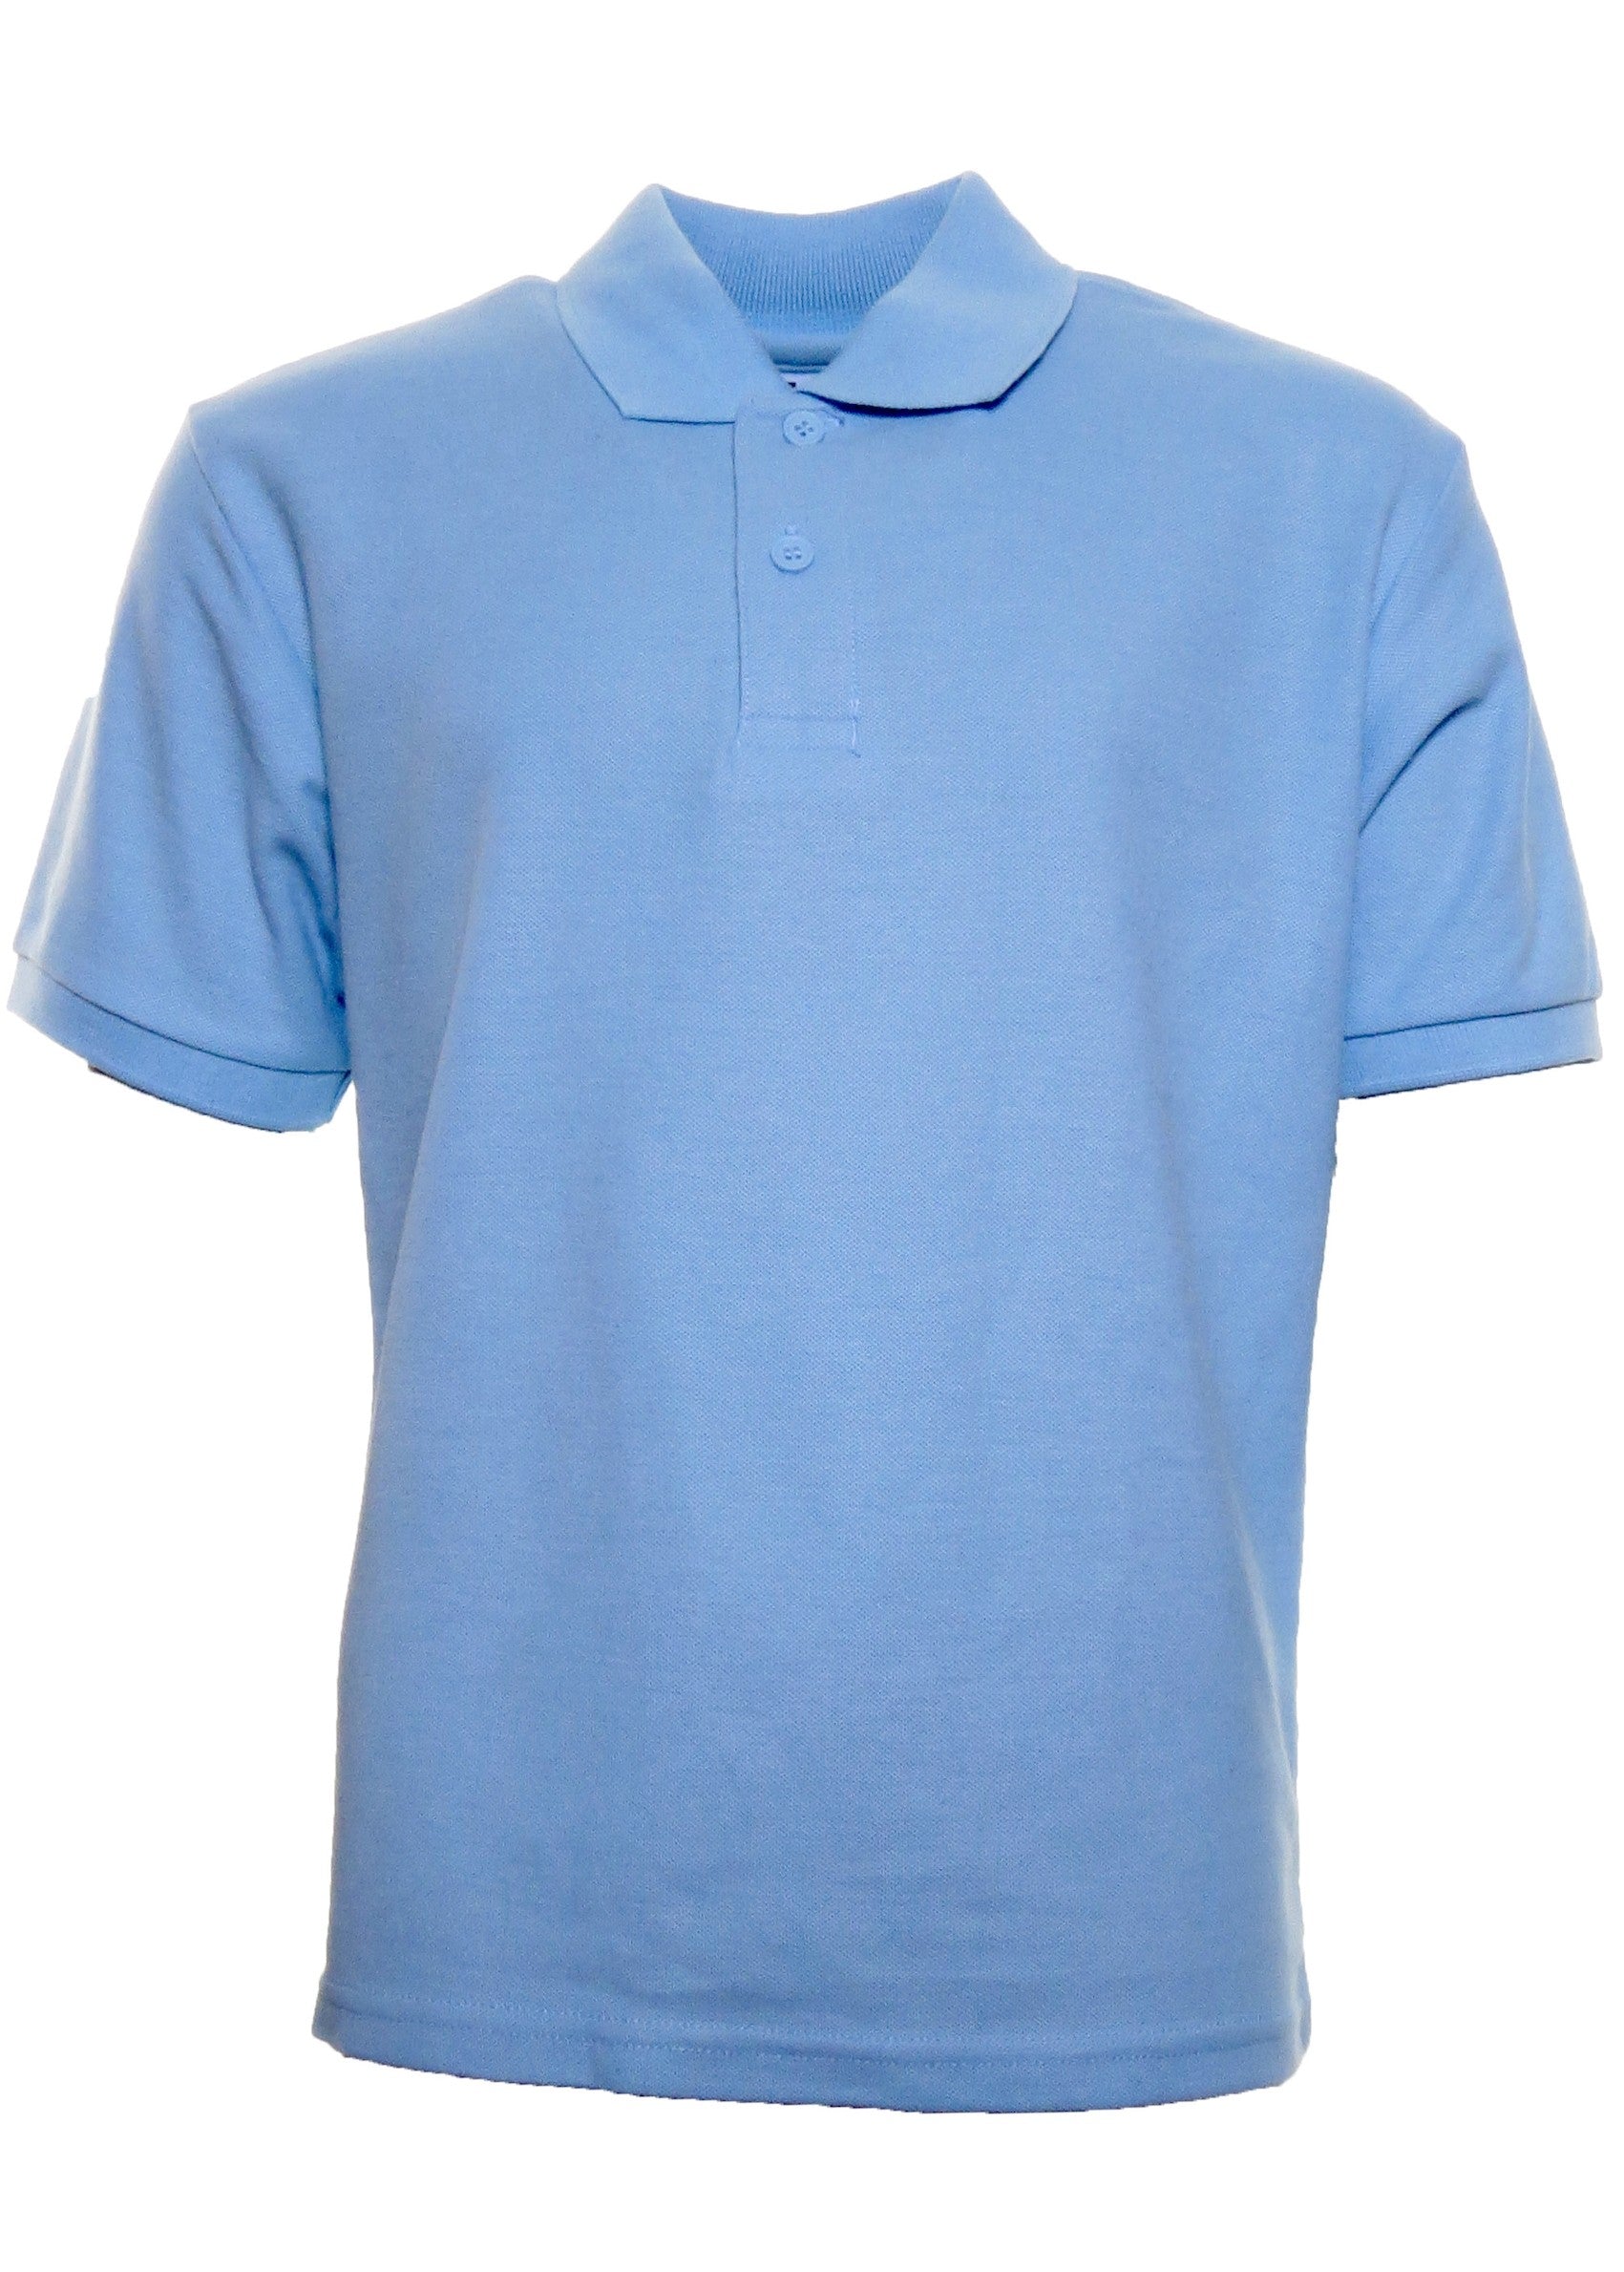 Plain Blue Polo shirt